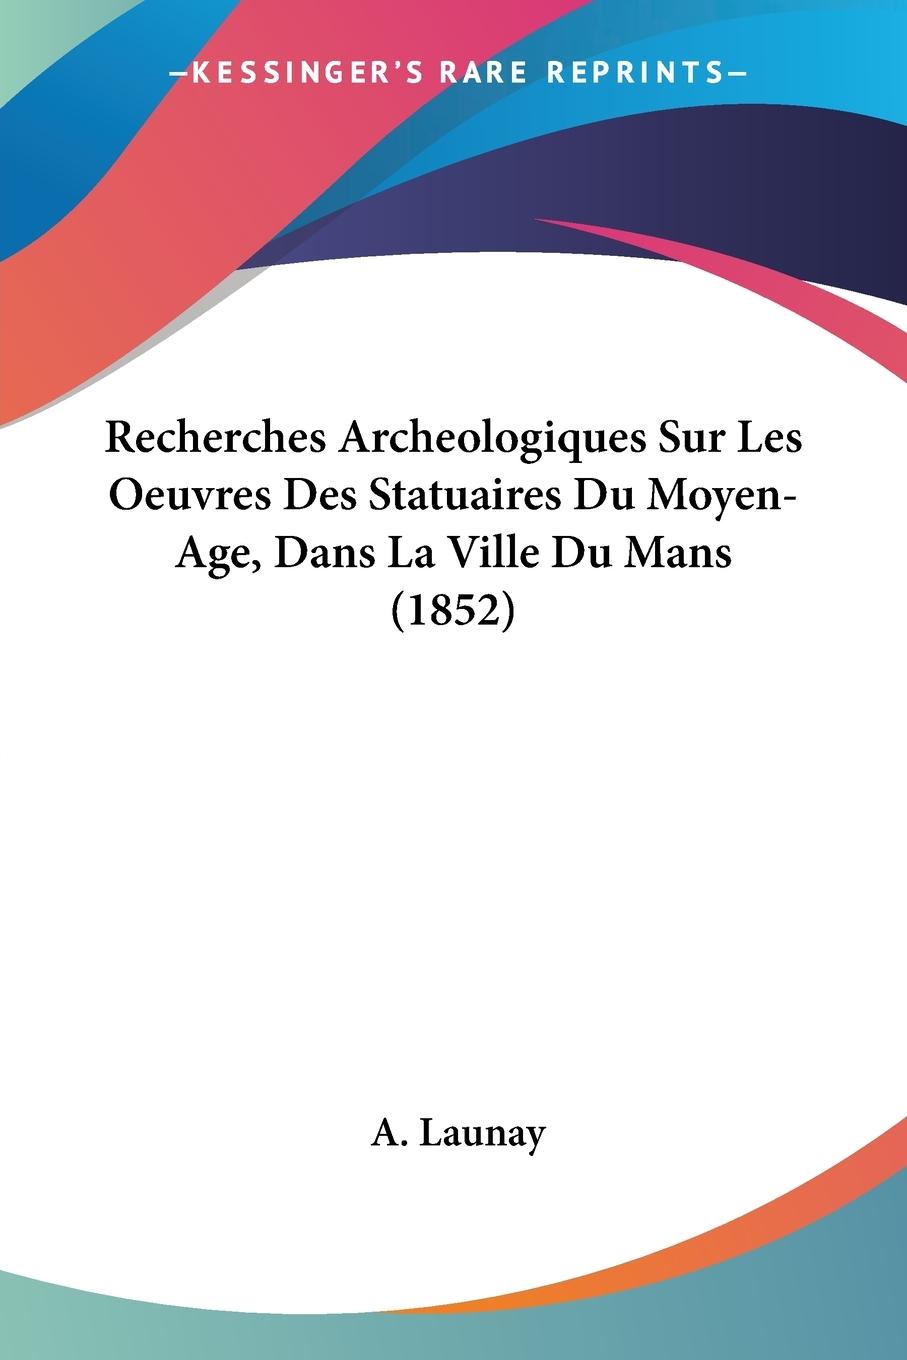 Recherches Archeologiques Sur Les Oeuvres Des Statuaires Du Moyen-Age, Dans La Ville Du Mans (1852) - Launay, A.